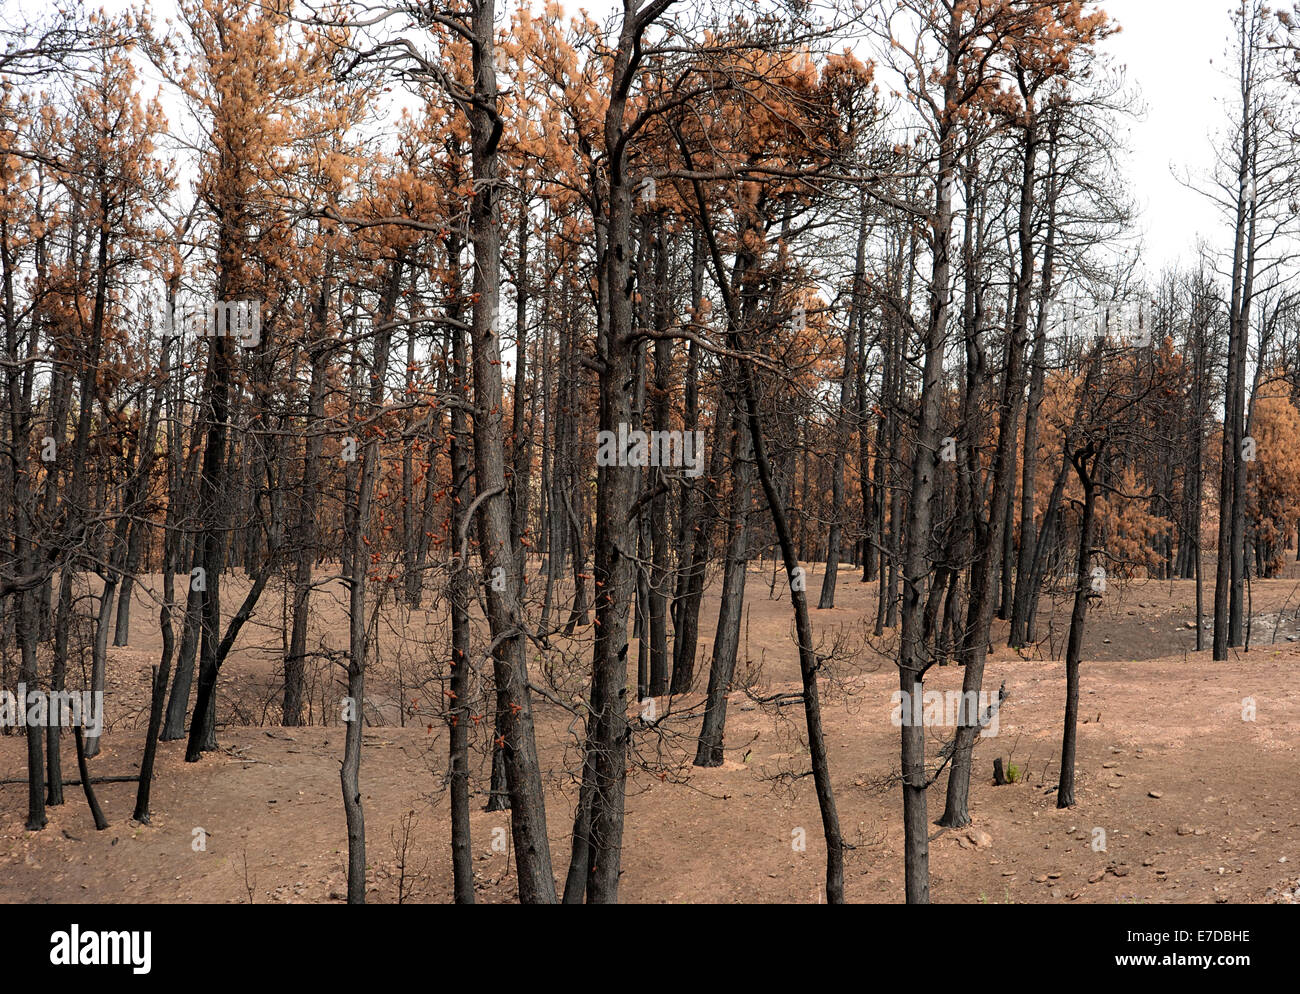 Secuelas de swift dejando incendios forestales queman pinos y tierra arrasada, Idaho, EE.UU. Foto de stock